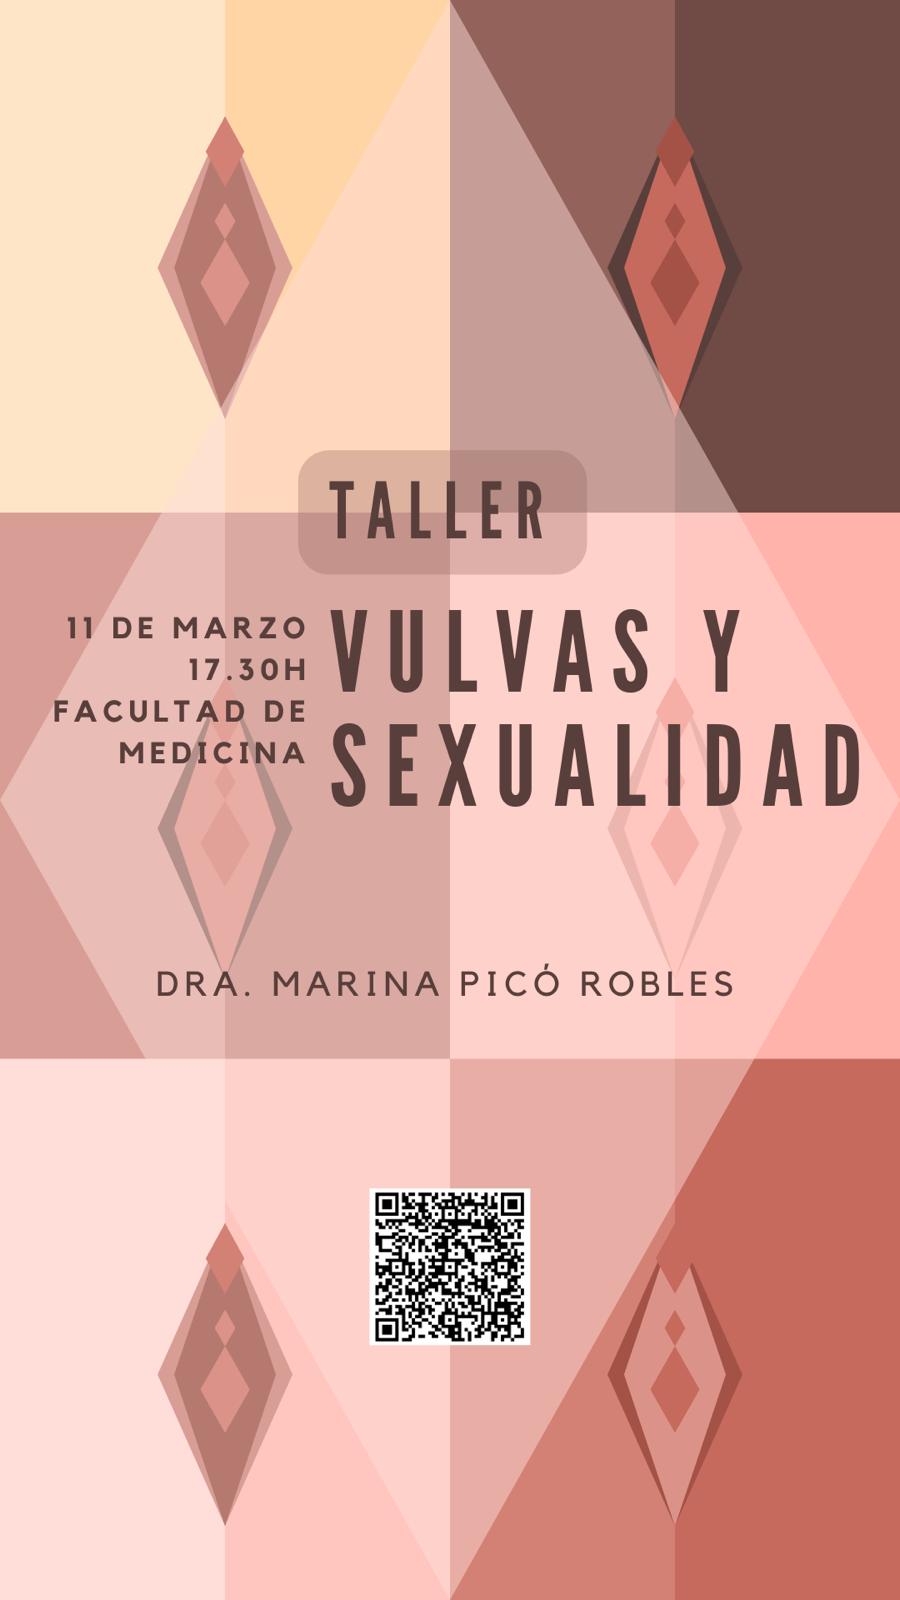 Taller: Vulvas y Sexualidad, a càrrec de Marina Picó